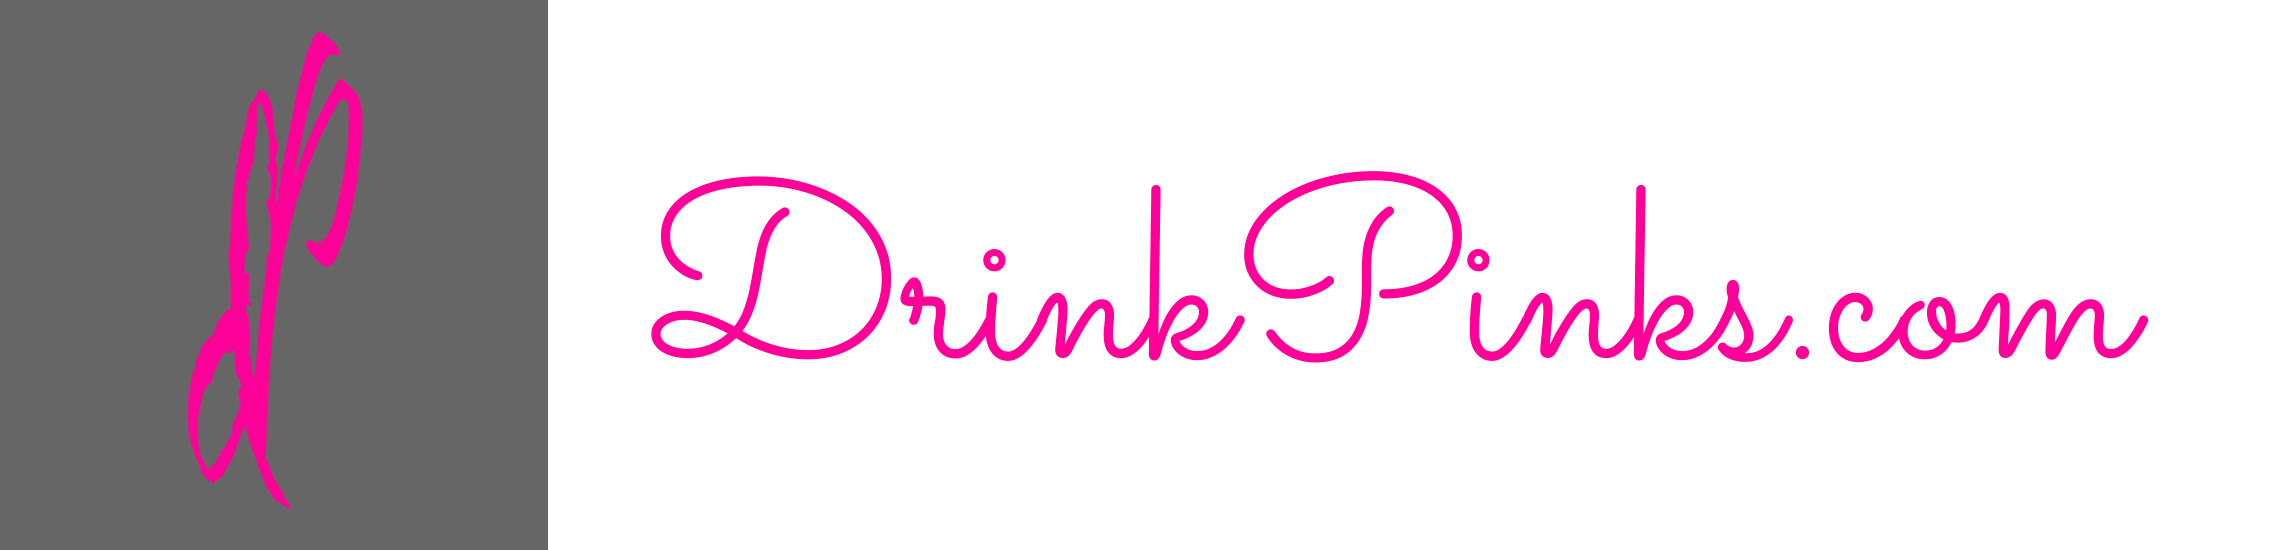 Pink's Logo - Drink Pinks